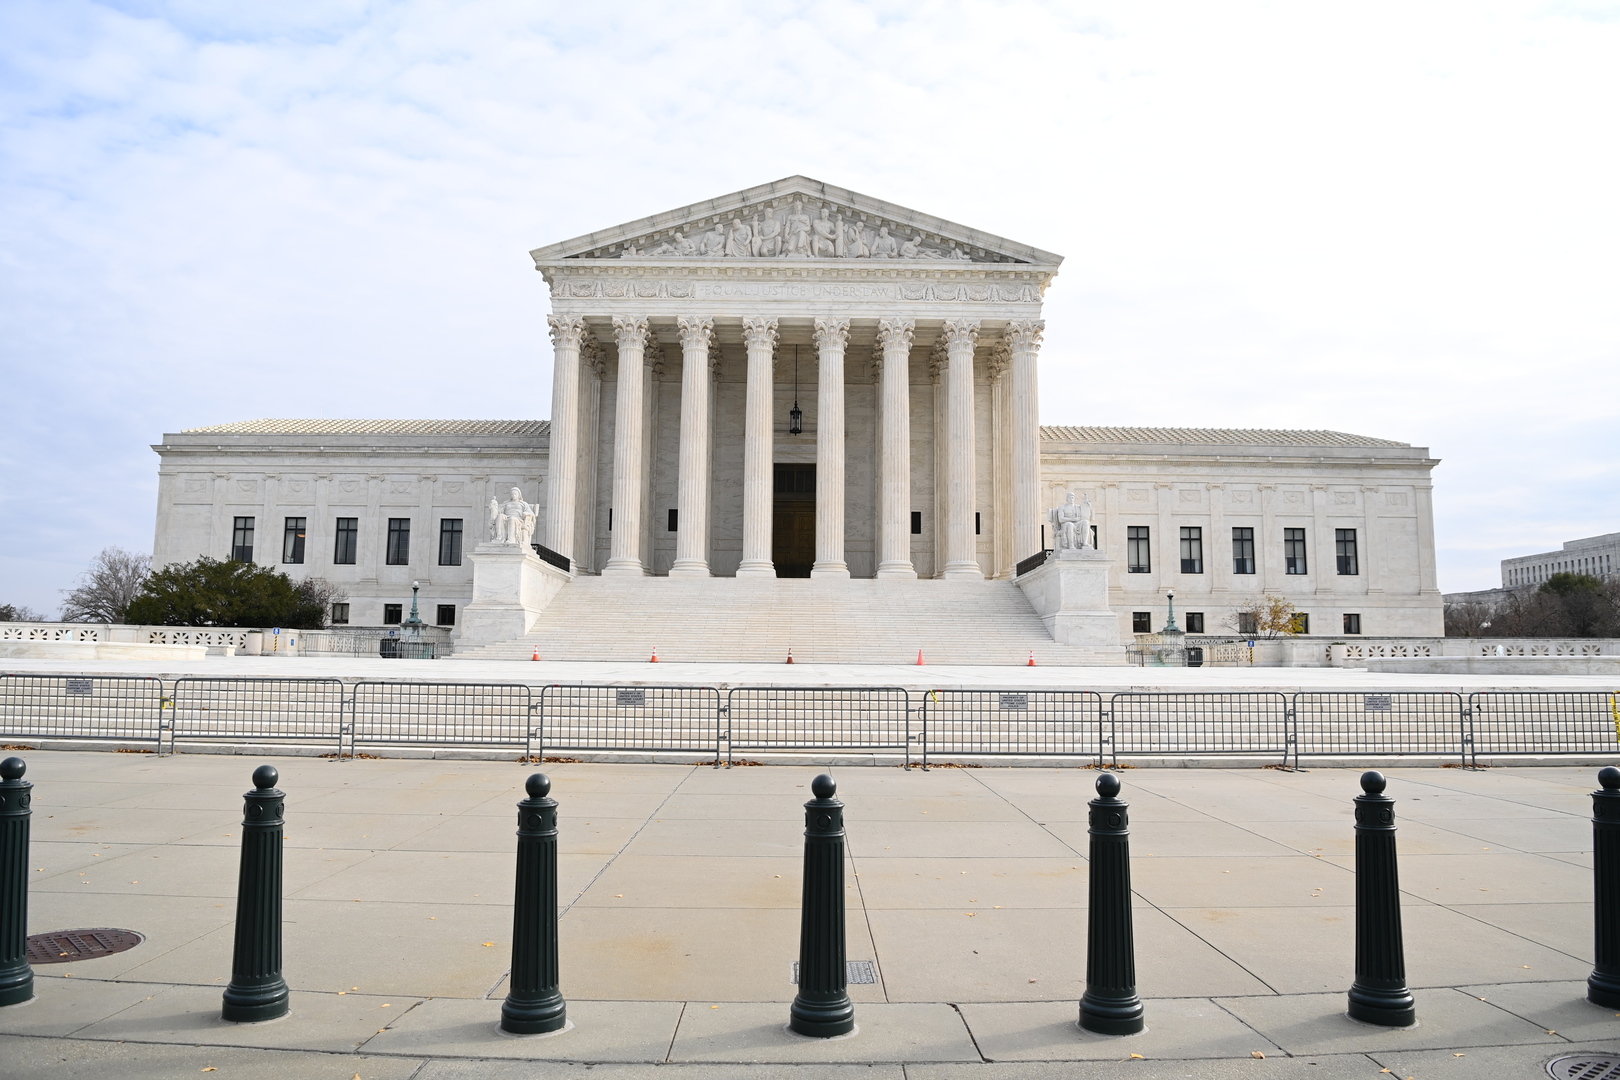 المحكمة العليا في الولايات المتحدة ترفض الطعن في فوز بايدن بـ 4 ولايات حاسمة